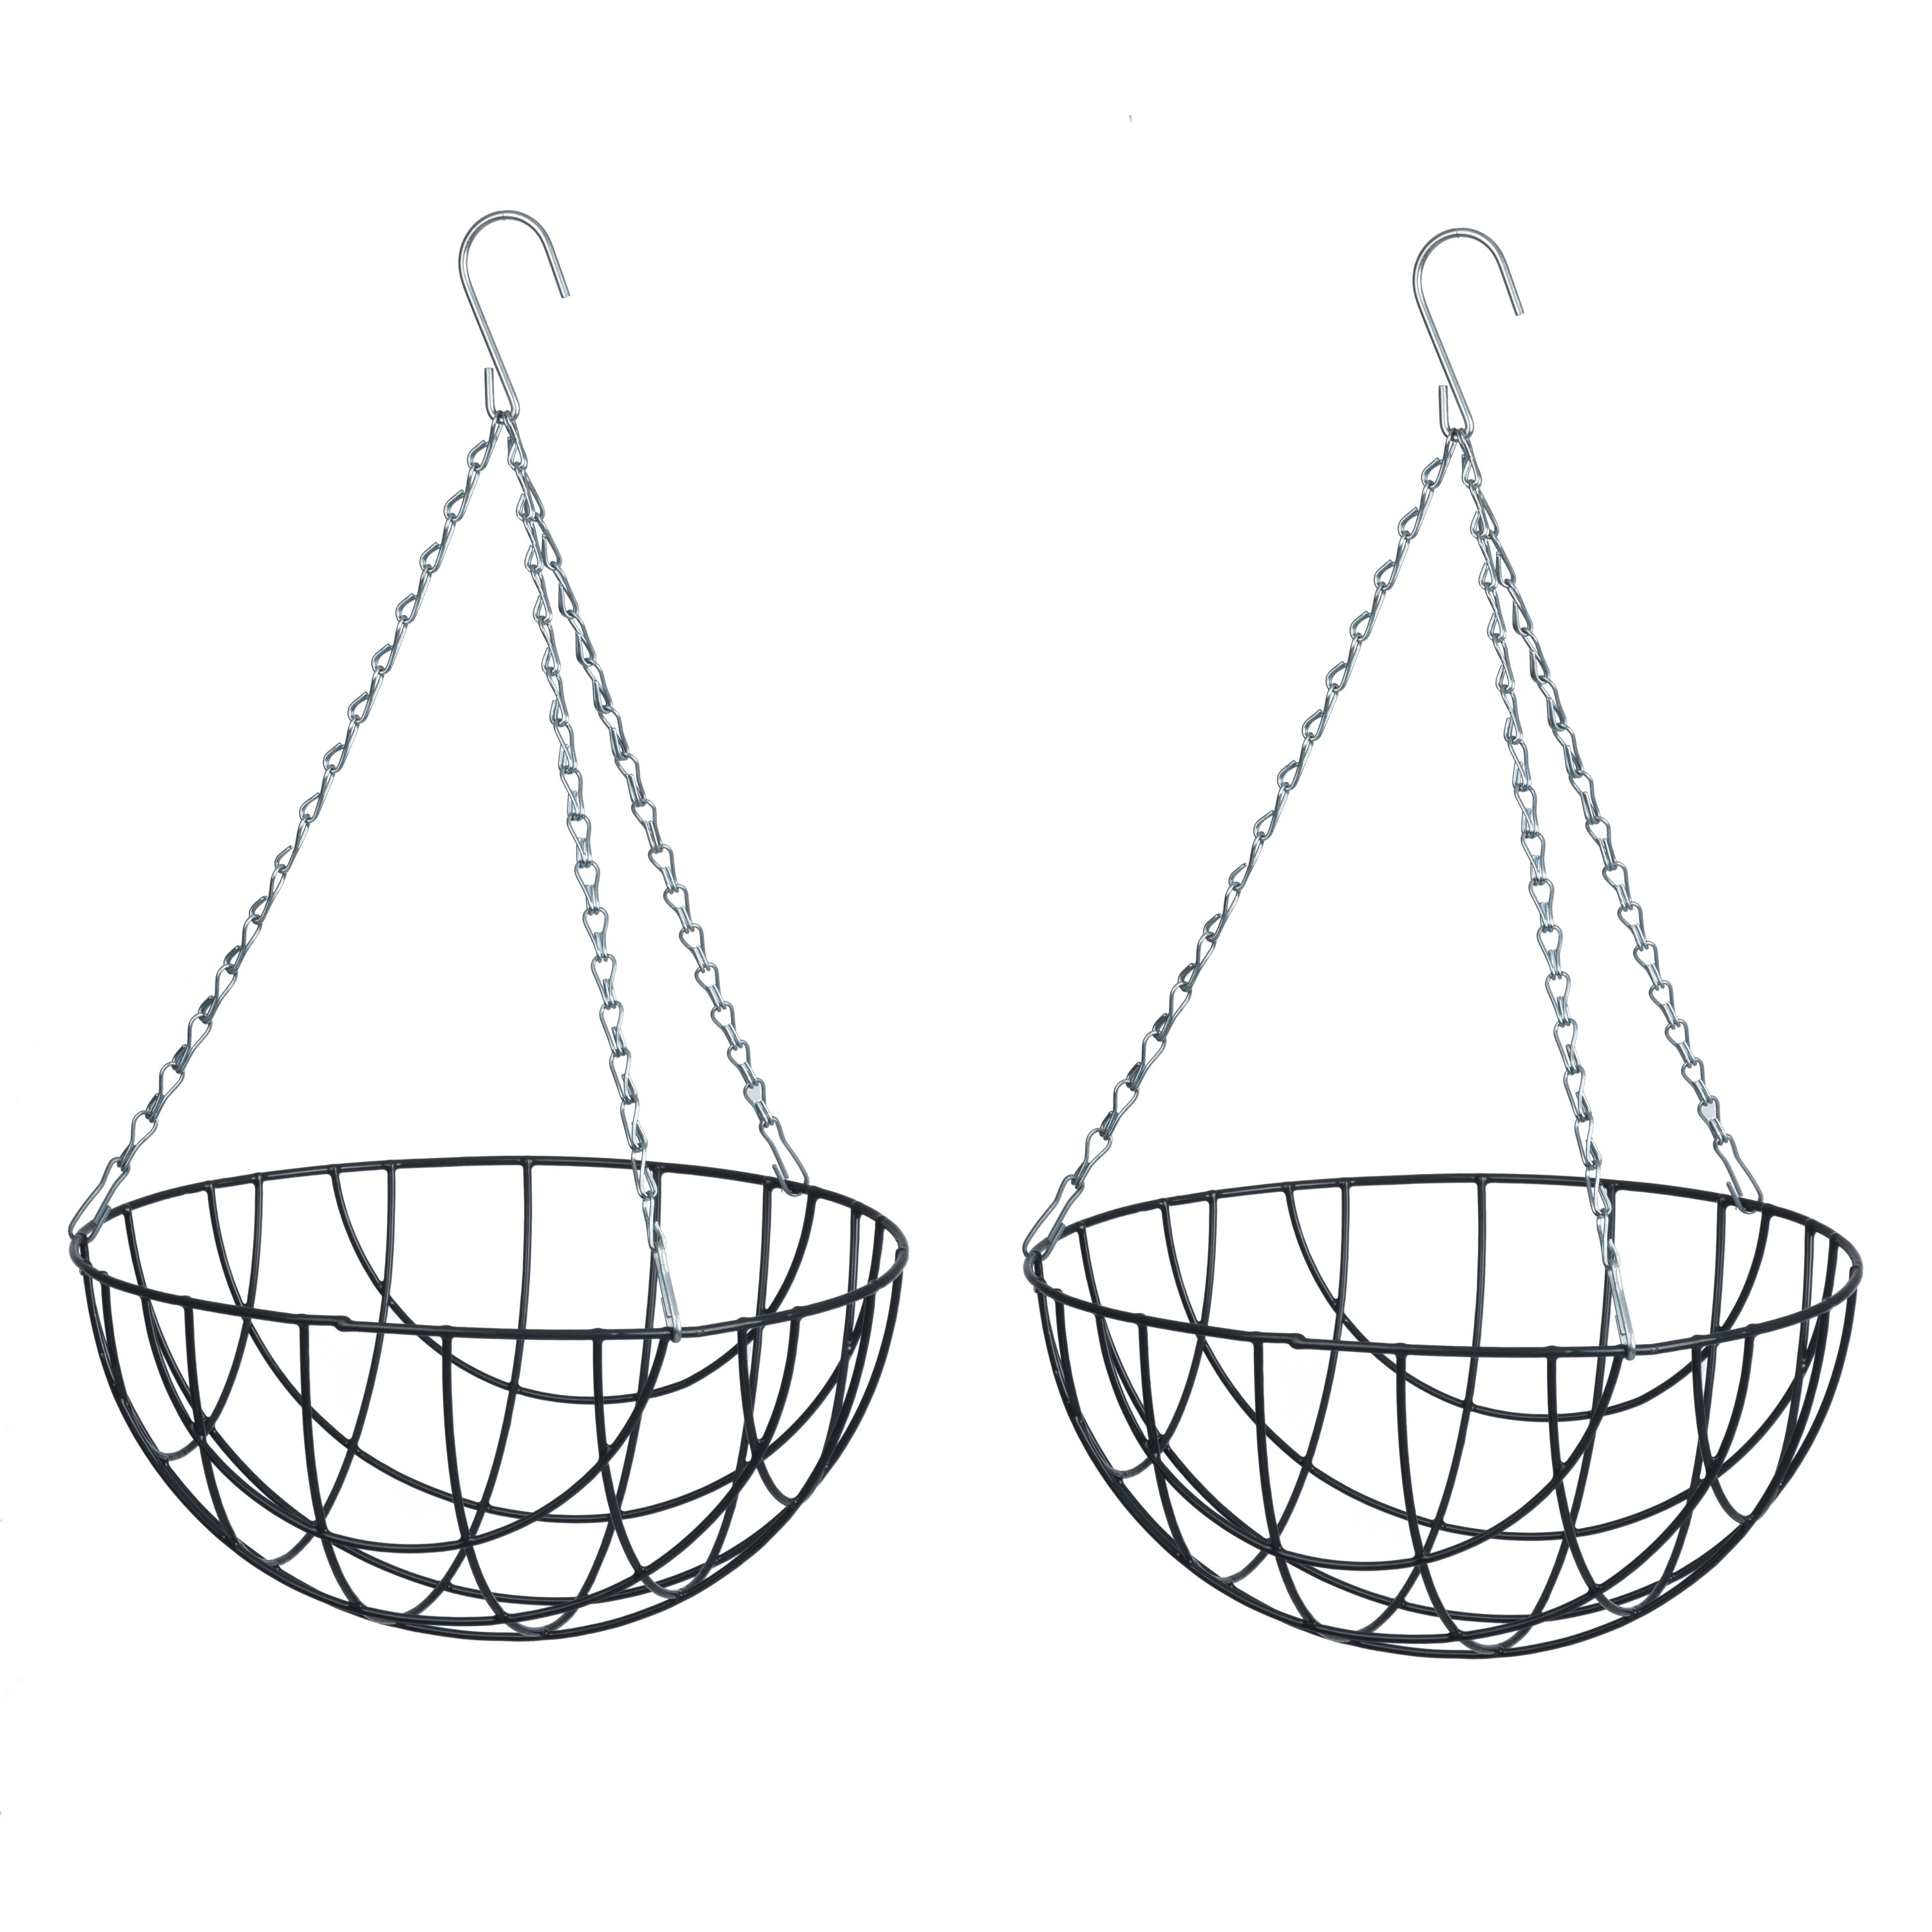 2x stuks hangende plantenbak metaaldraad donkergroen met ketting H15.5 x D35 cm hanging basket